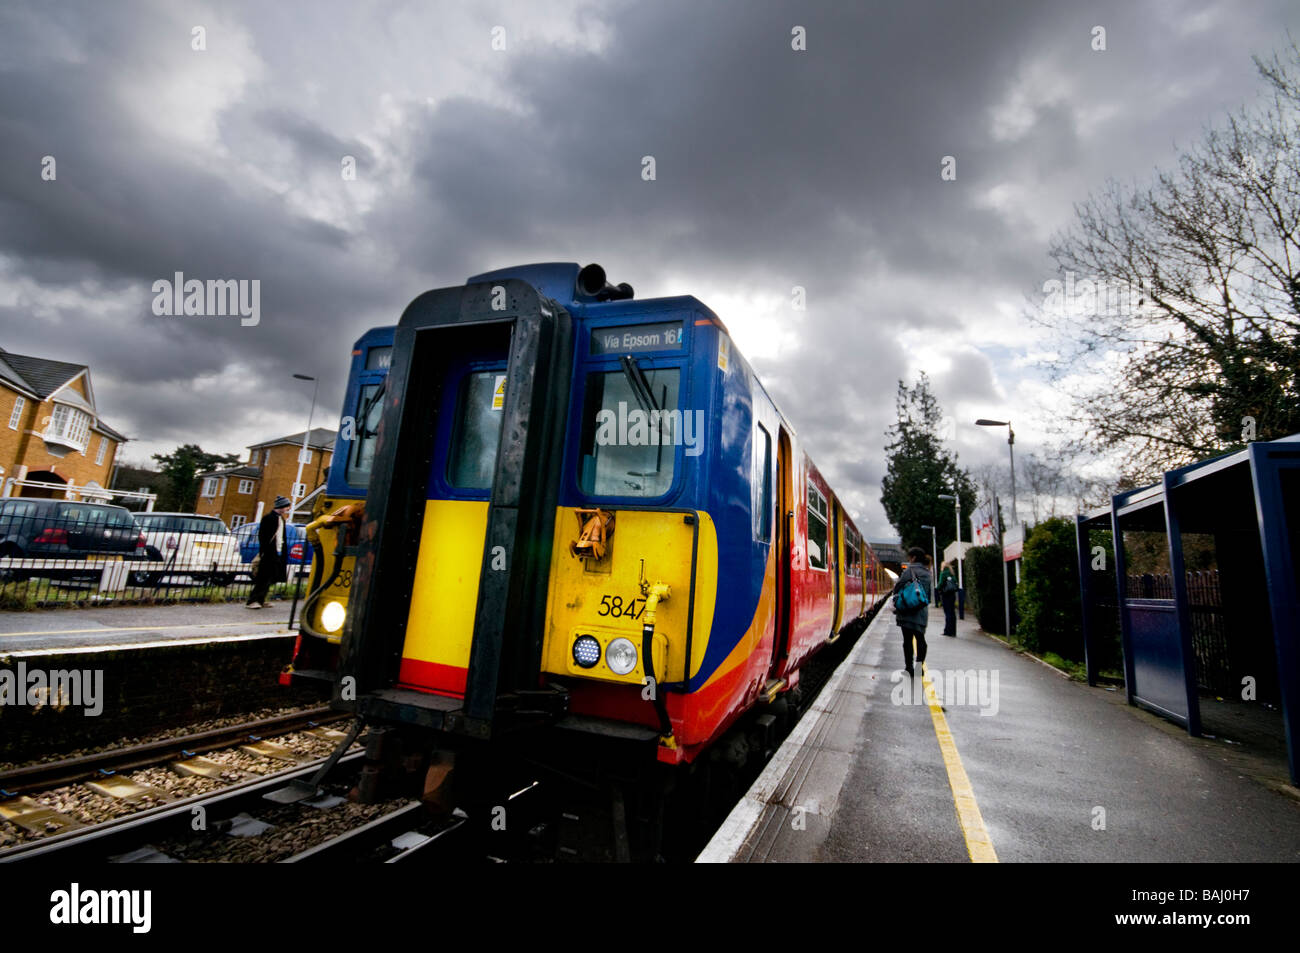 Bad Weather & Train on platform, Surrey, UK Stock Photo